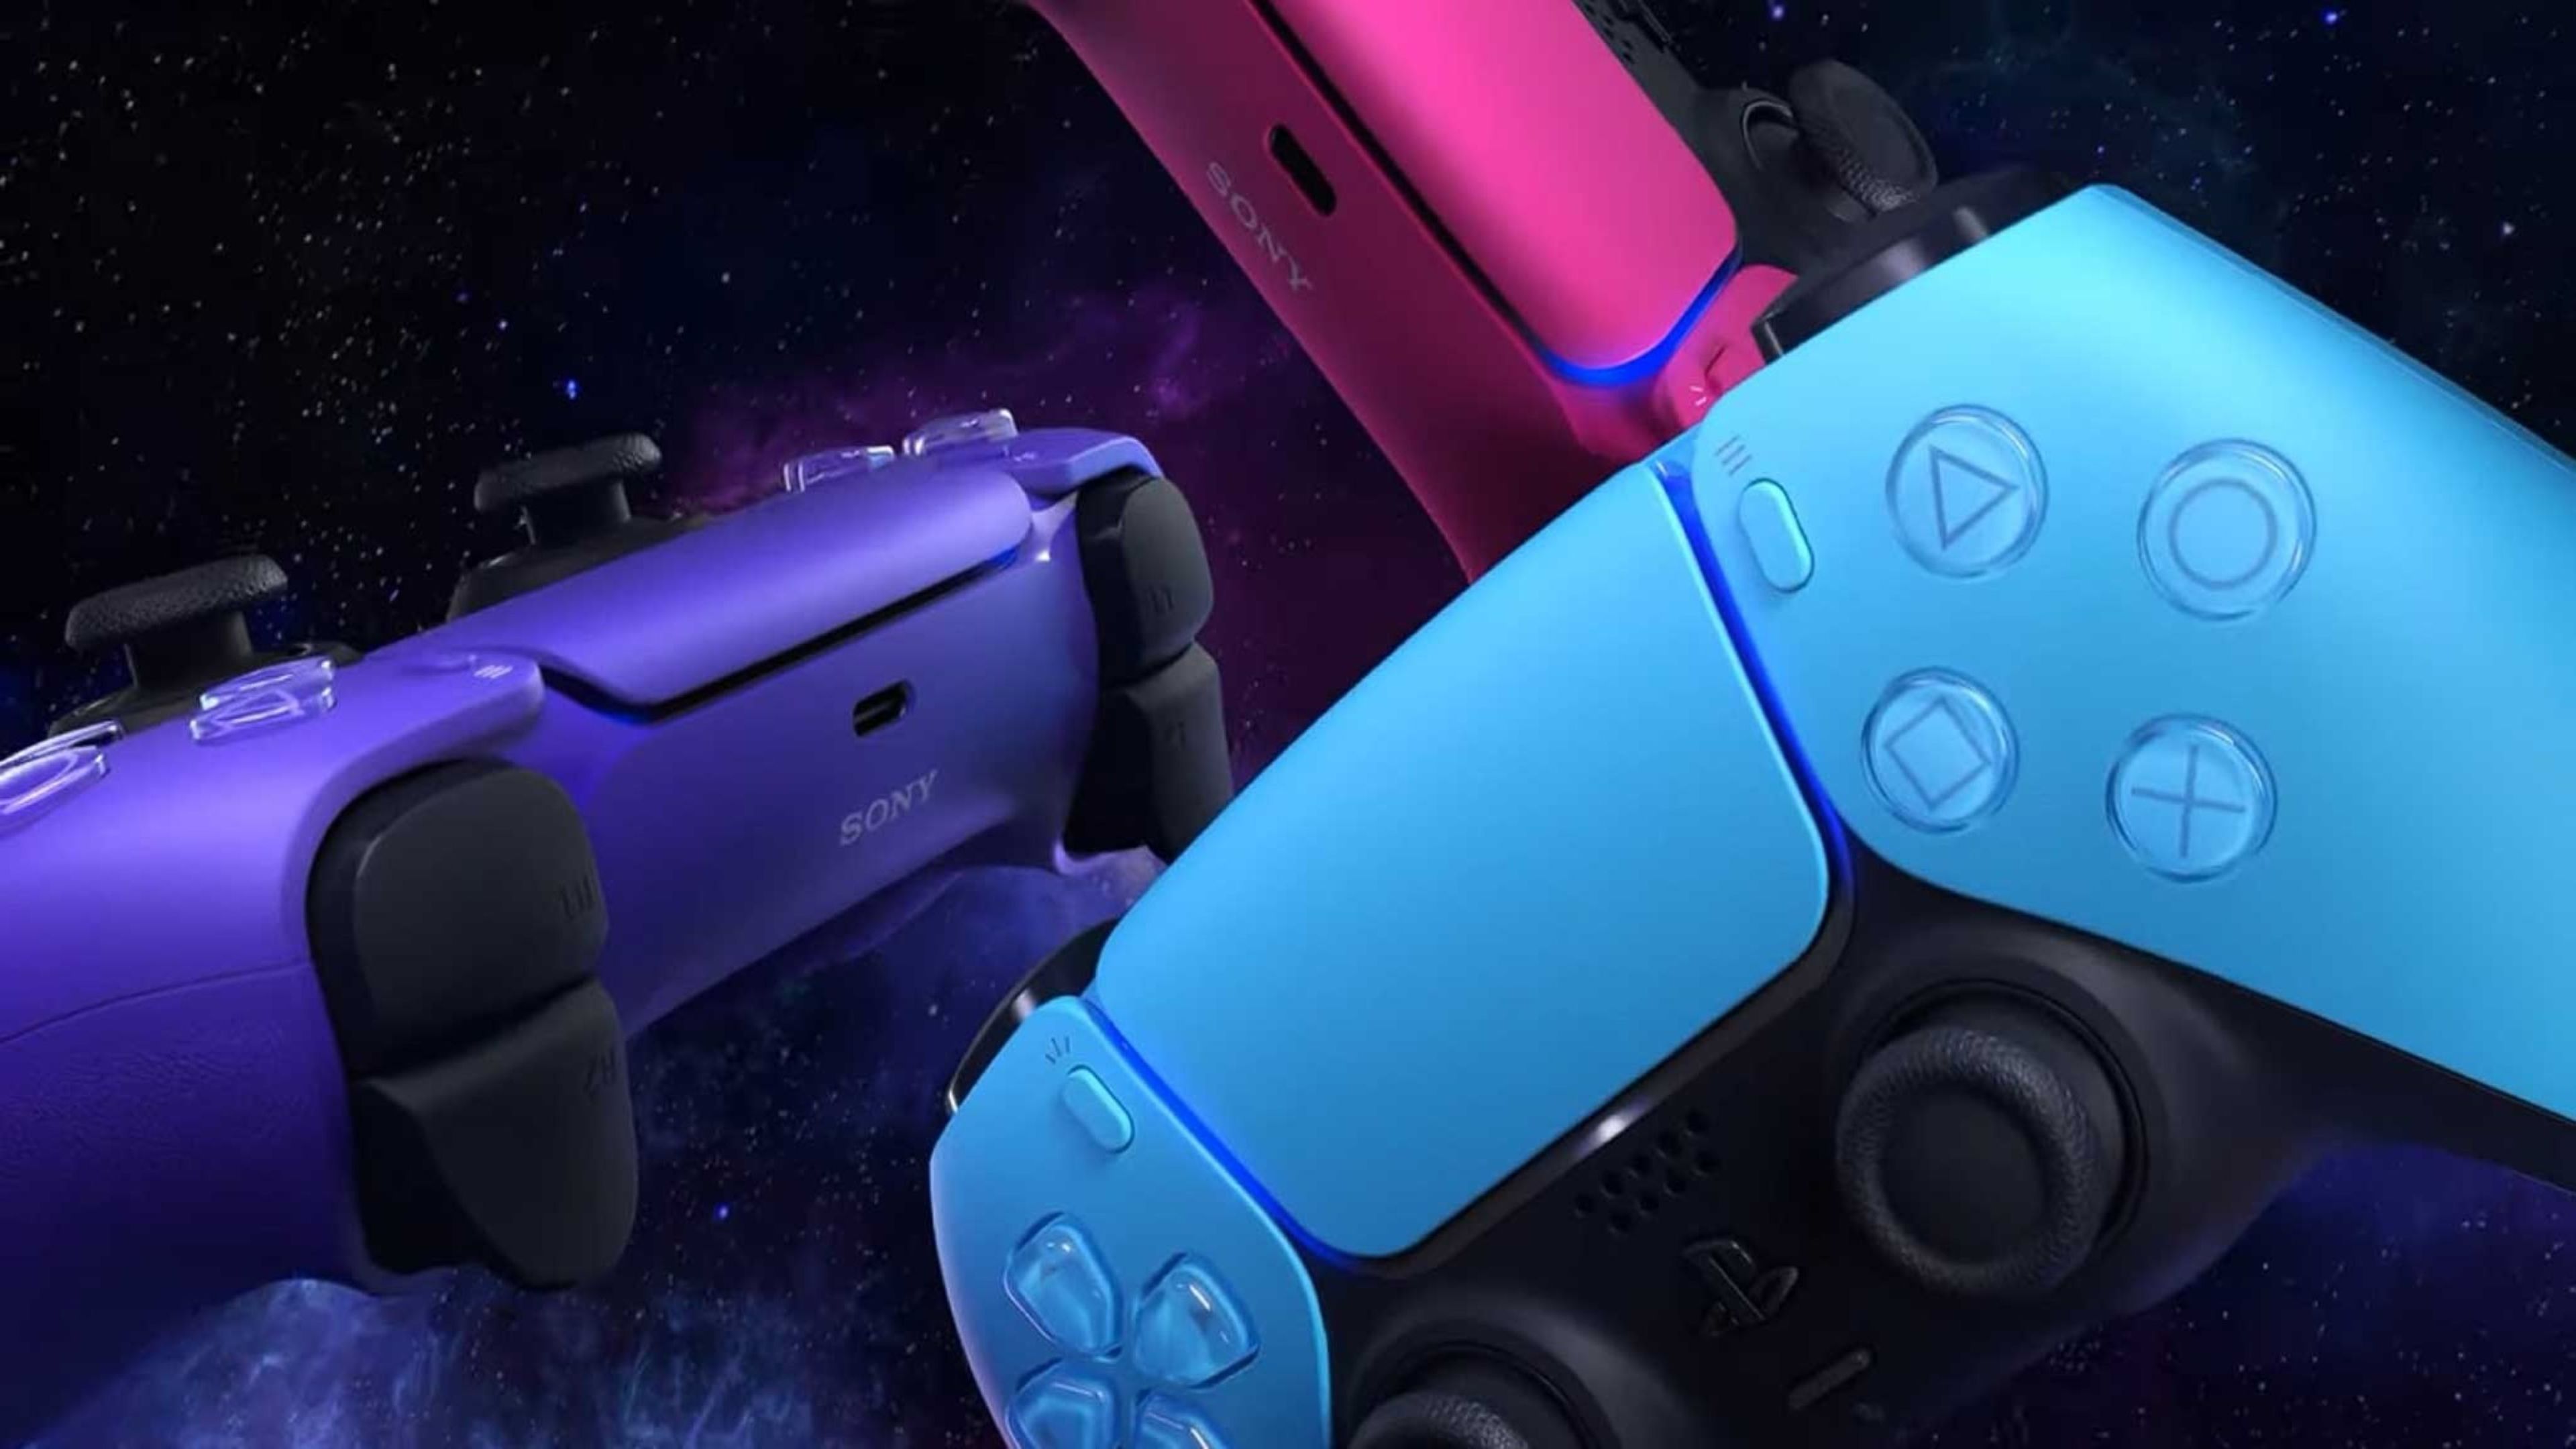 La patente de Sony que podría mejorar los mandos DualSense de PS5